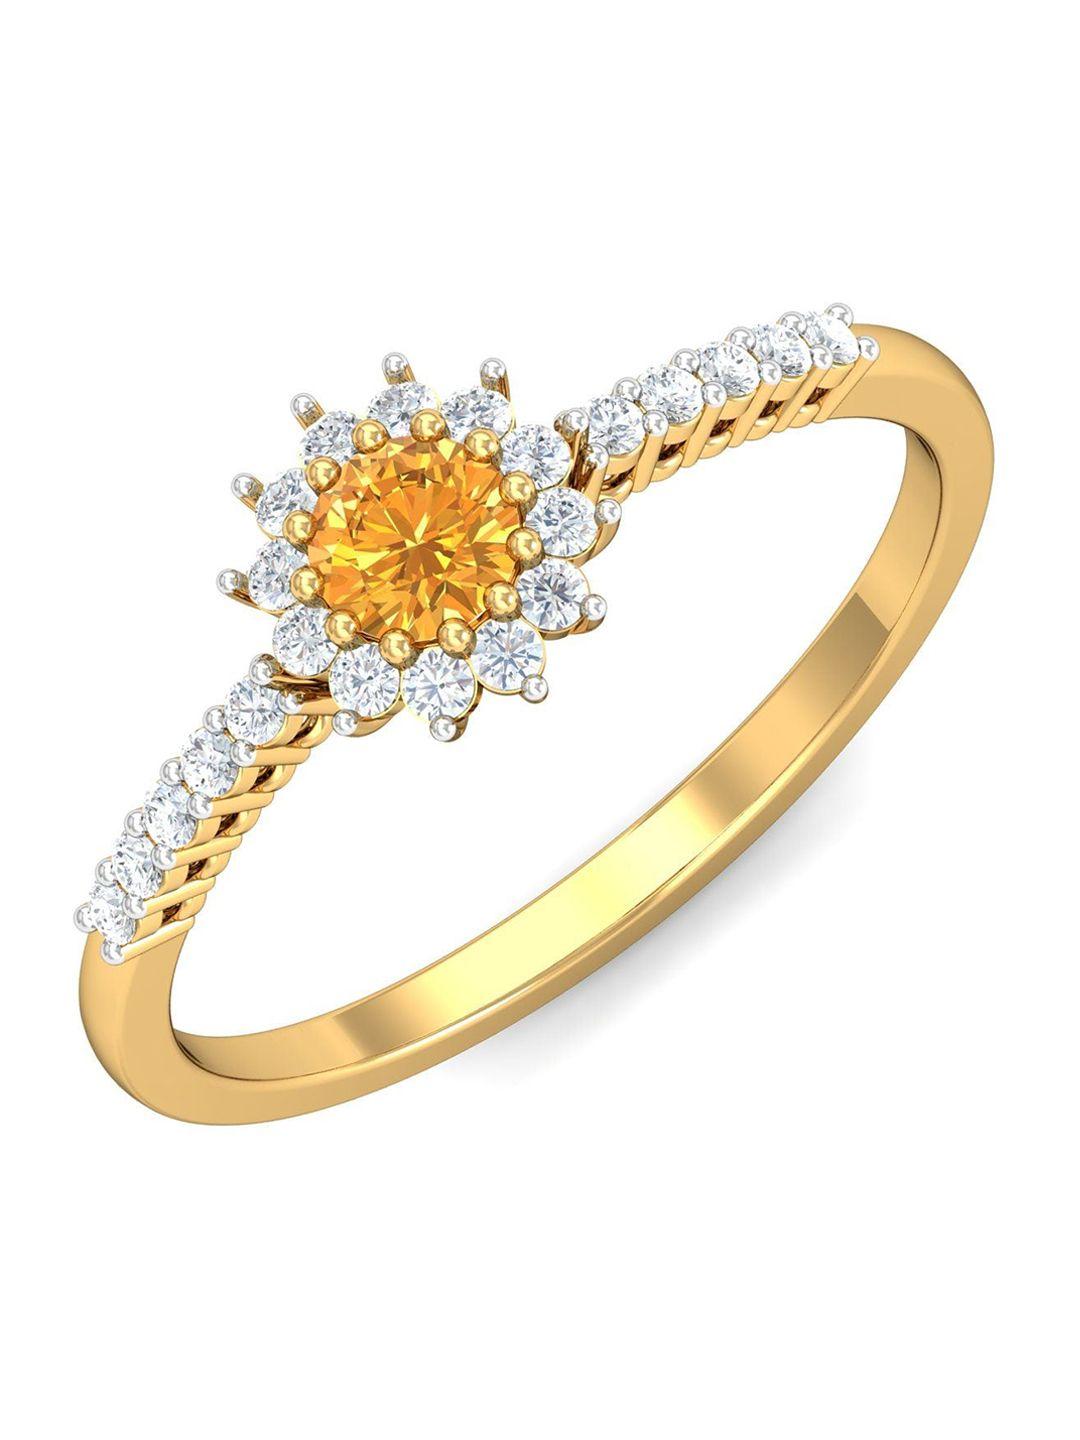 kuberbox-glam-18kt-gold-diamond-citrine-studded-finger-ring-1.94gm